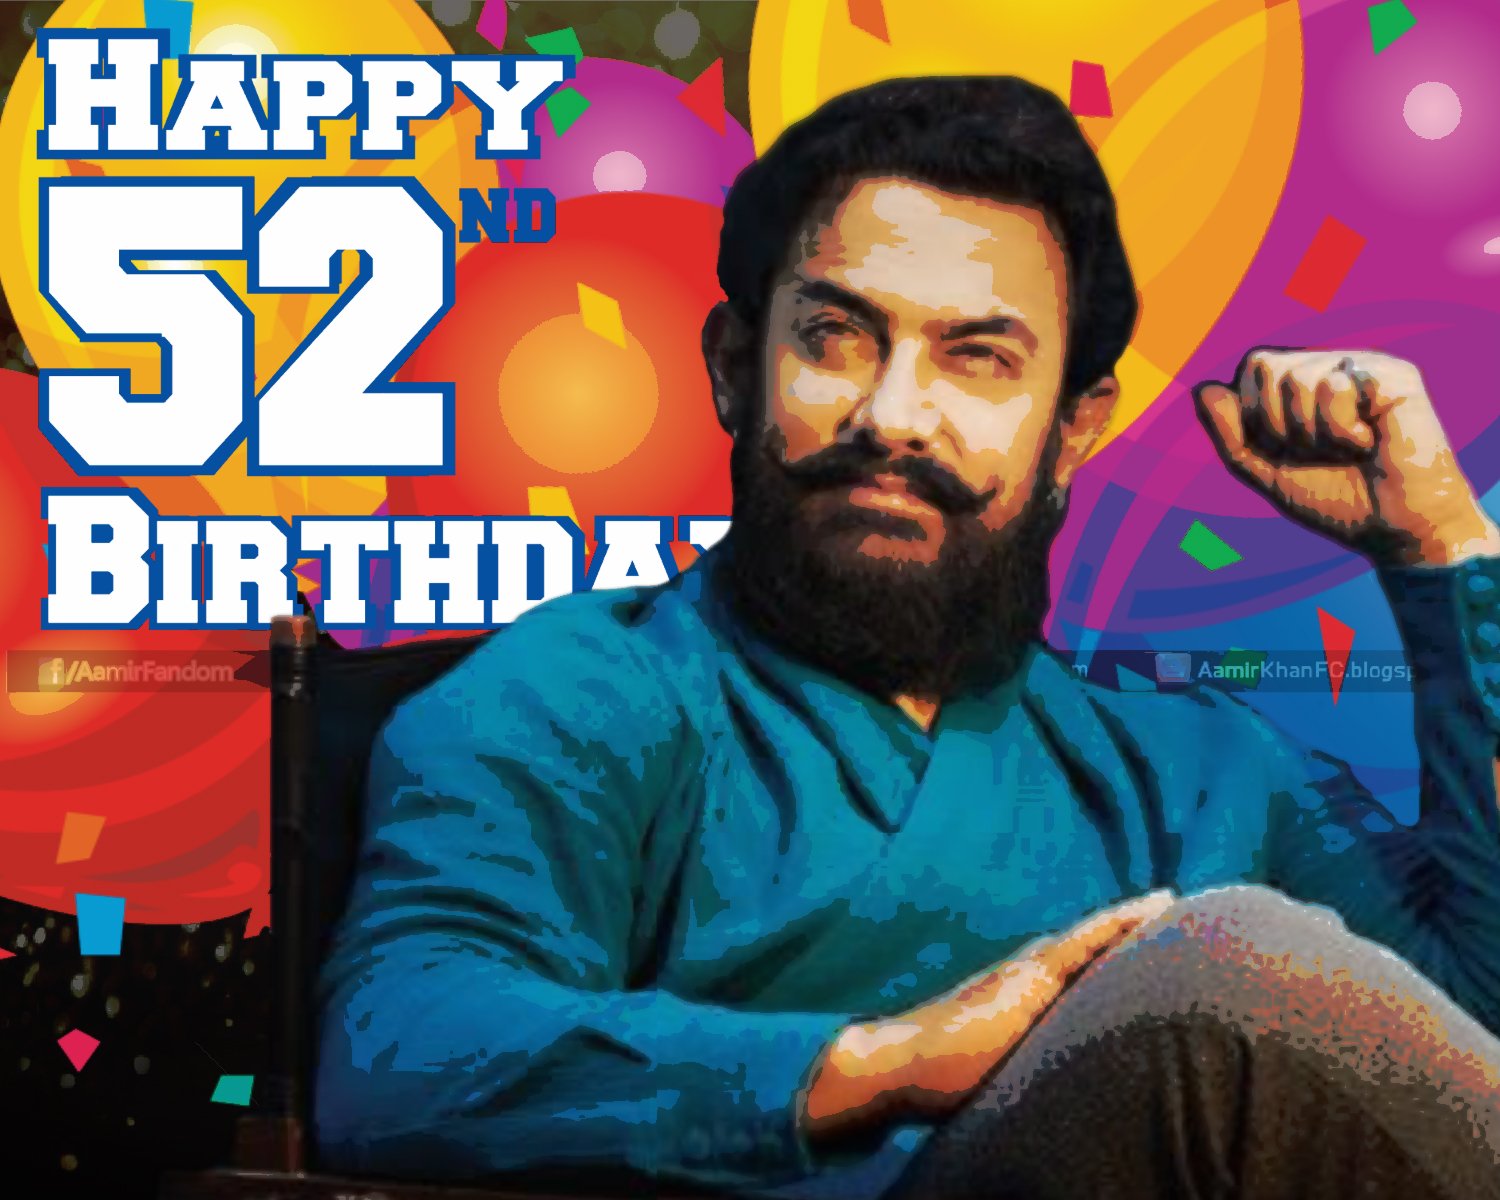 Wishing Aamir Khan A very Happy 52th Birthday, a bollywood legend. 